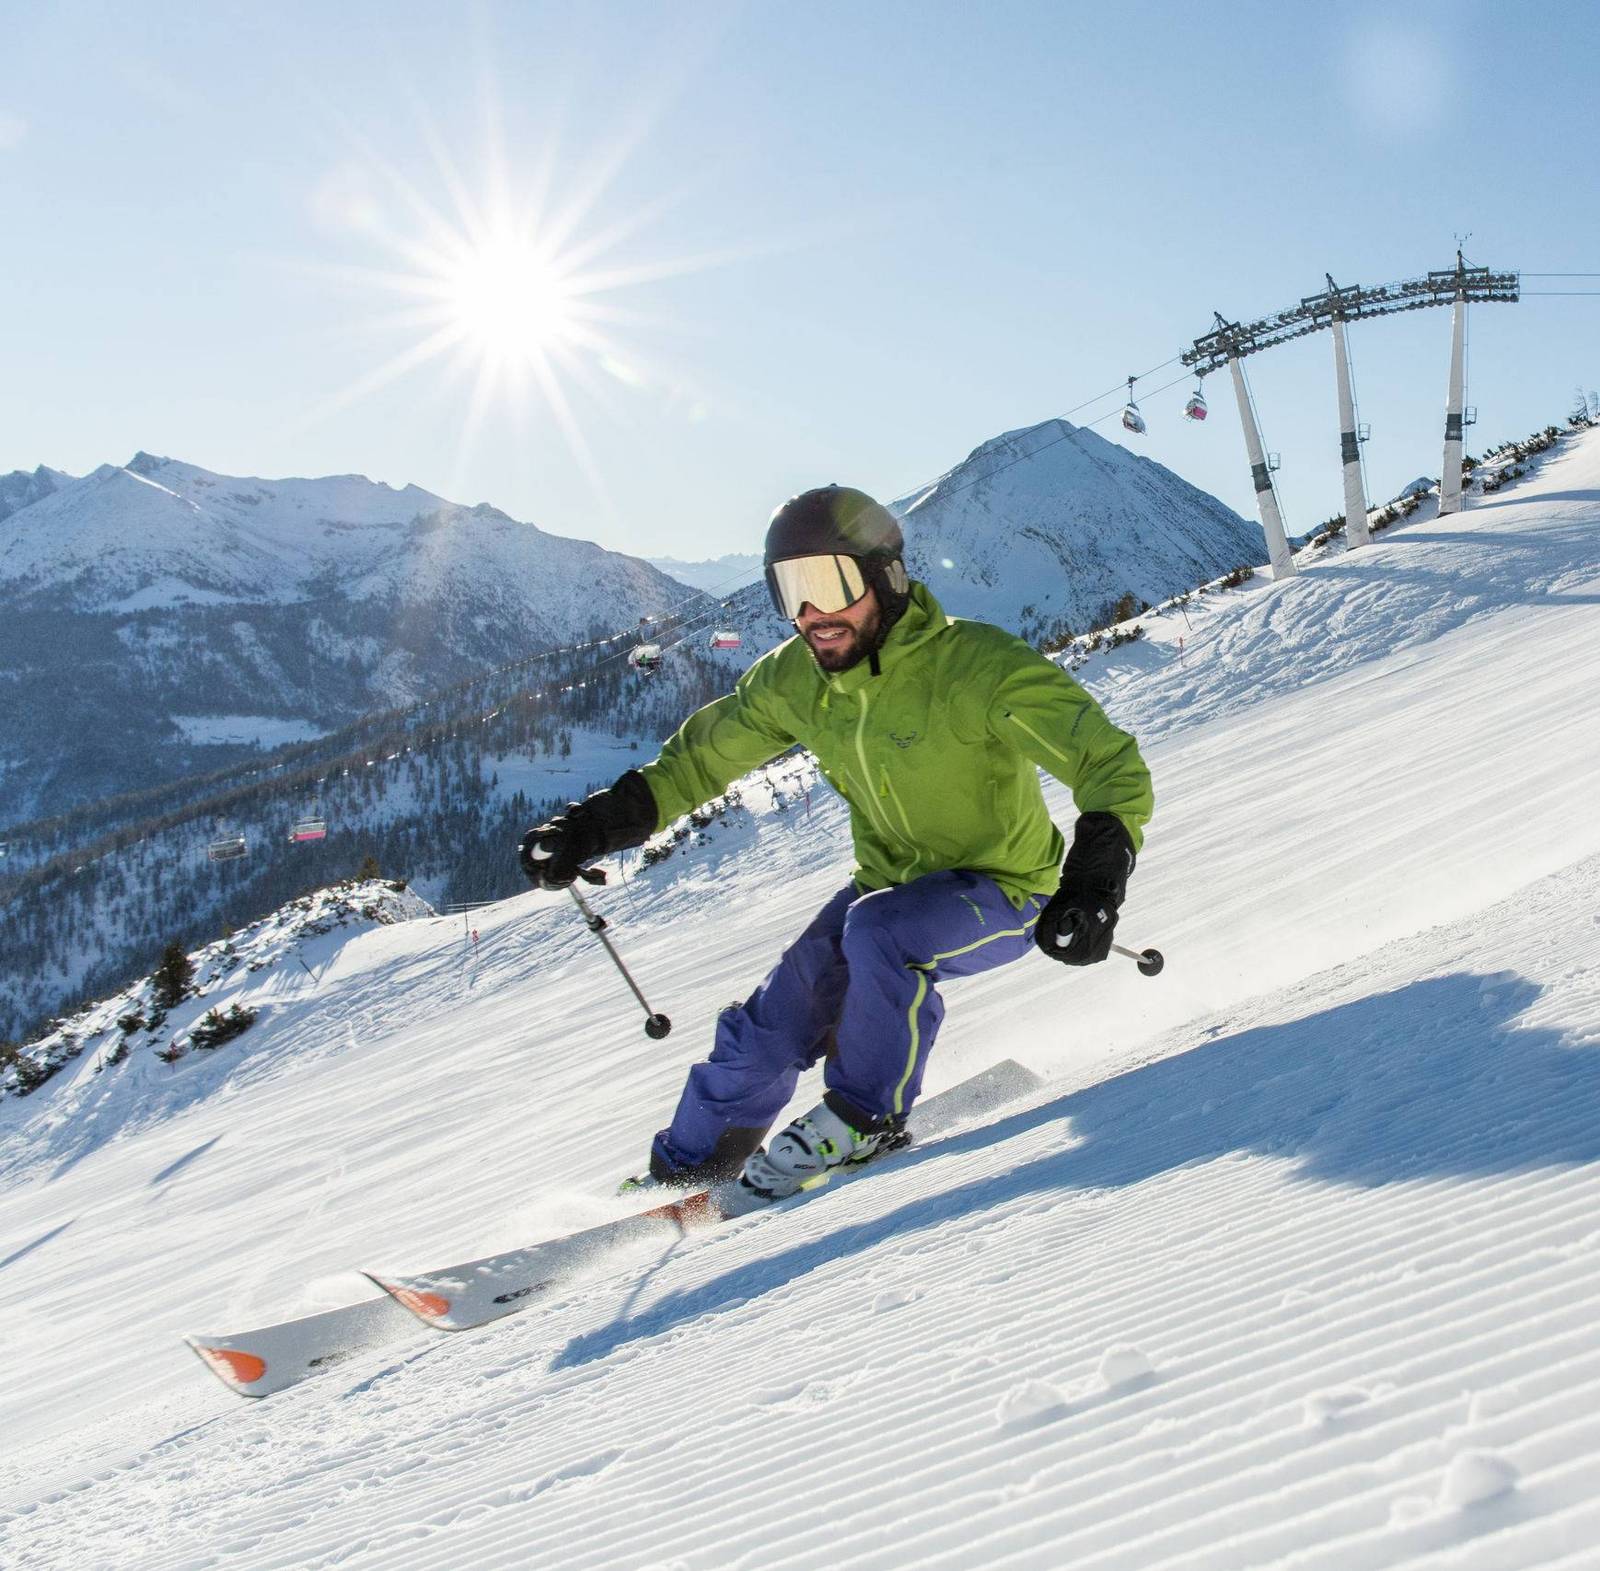 Ein Skifahrer mit einer grünen Jacke fährt auf einer frisch präparierten Piste.